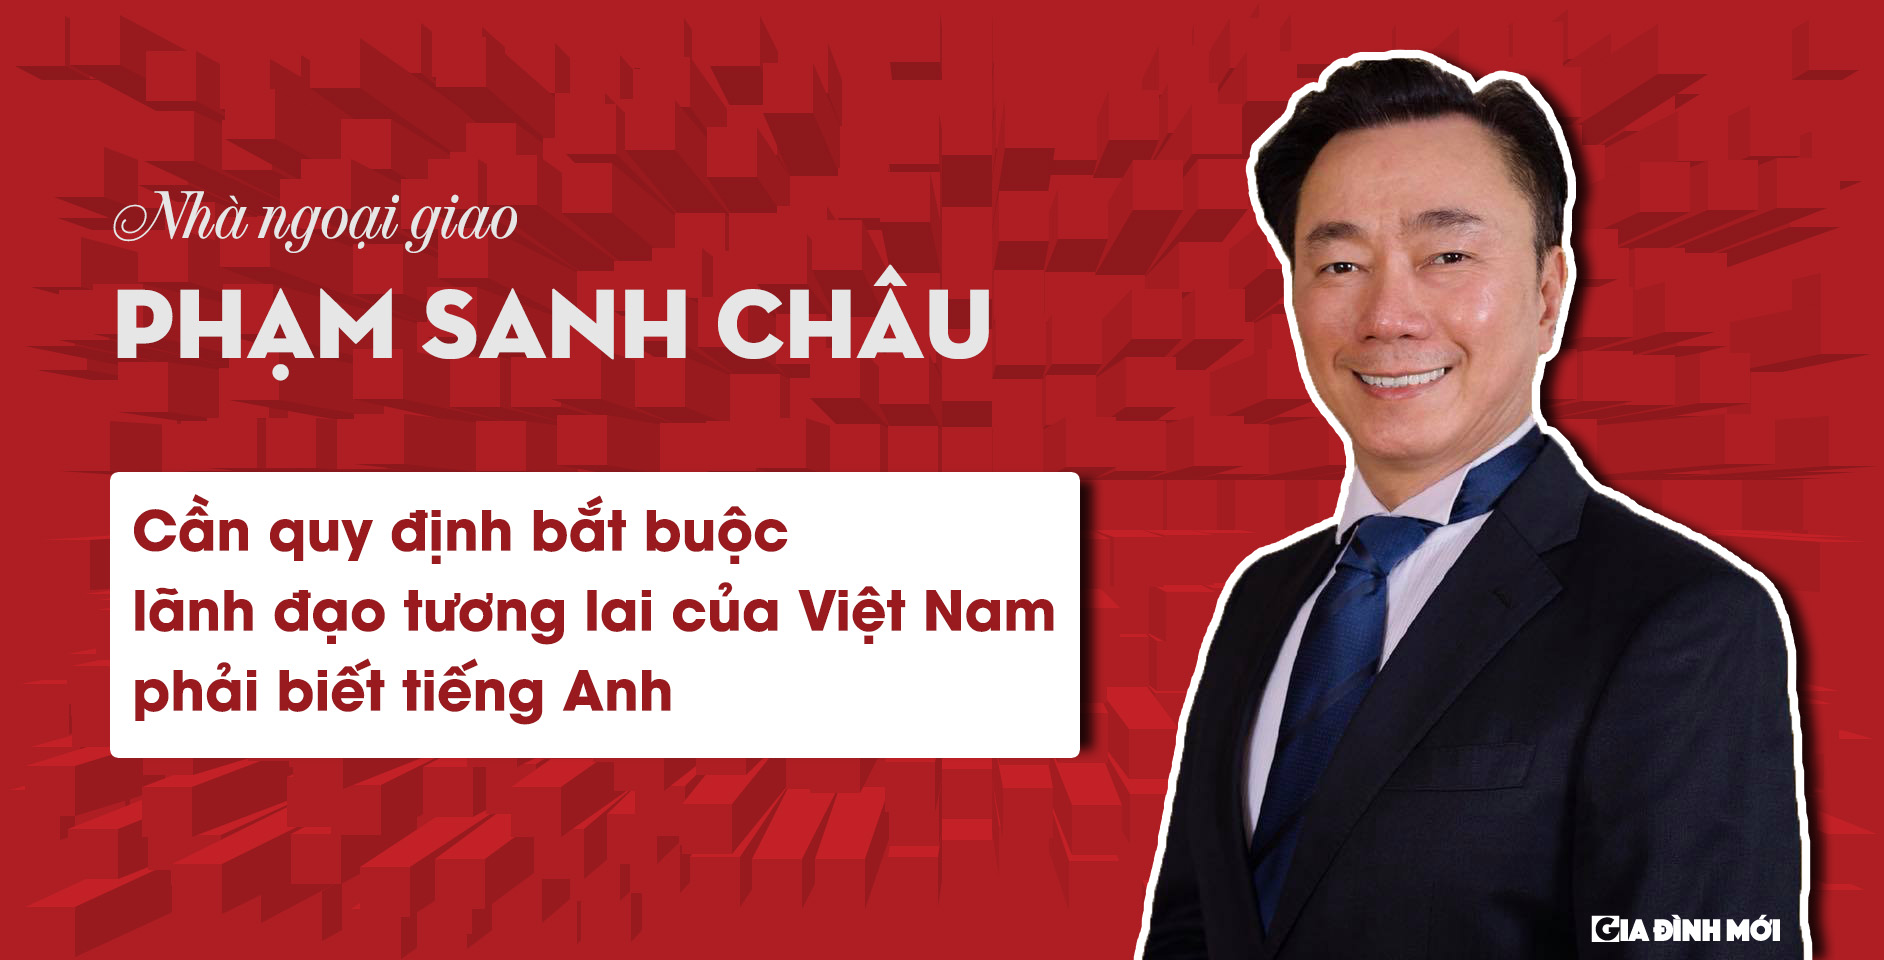 Cần quy định bắt buộc lãnh đạo tương lai của Việt Nam phải biết tiếng Anh 0